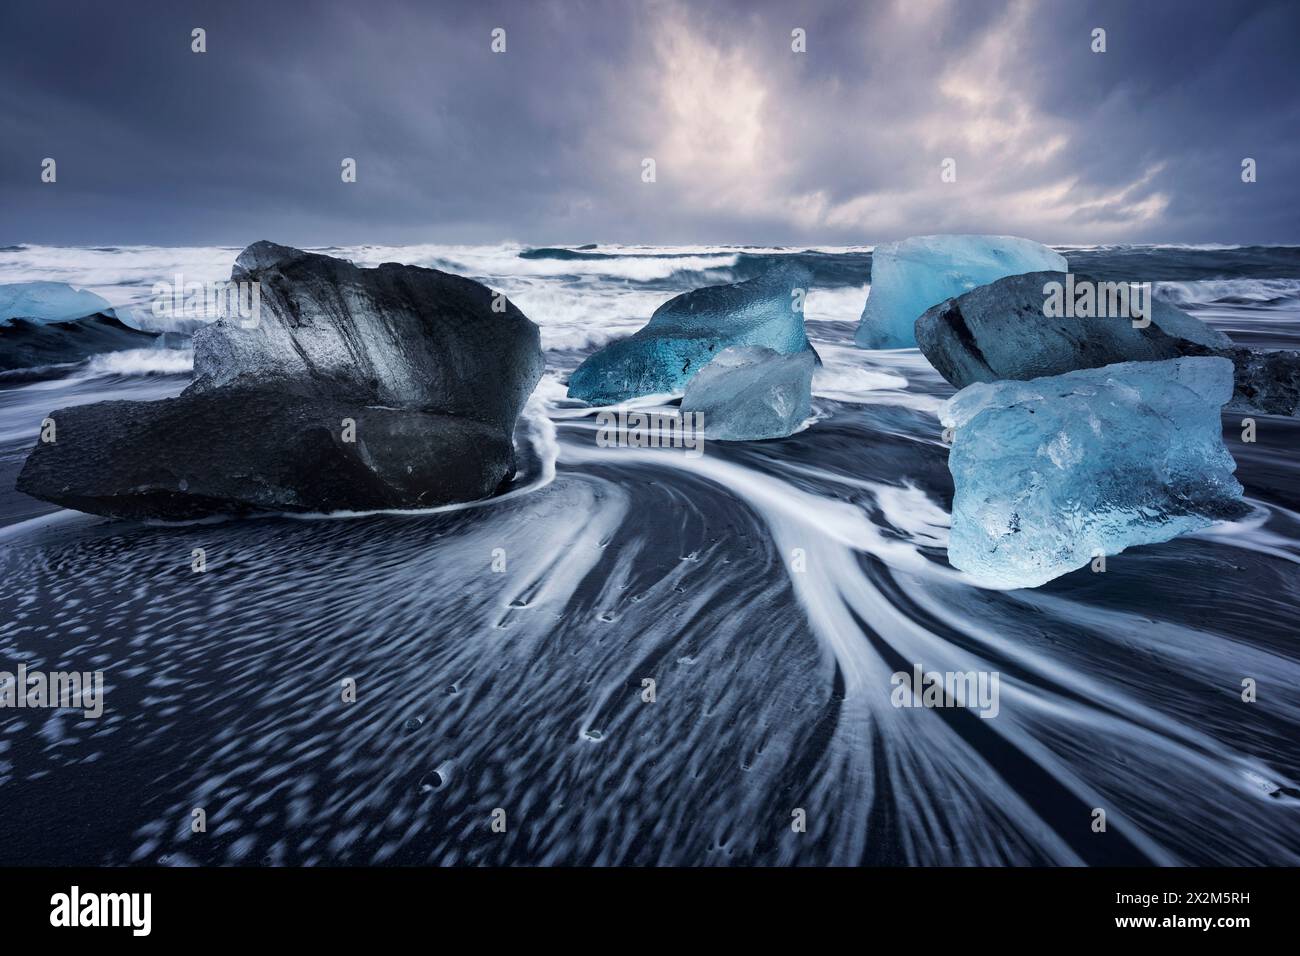 Géographie / voyage, Islande, côte sud, plage de glace, AUTORISATION-DROITS-SUPPLÉMENTAIRES-INFO-NON-DISPONIBLE Banque D'Images